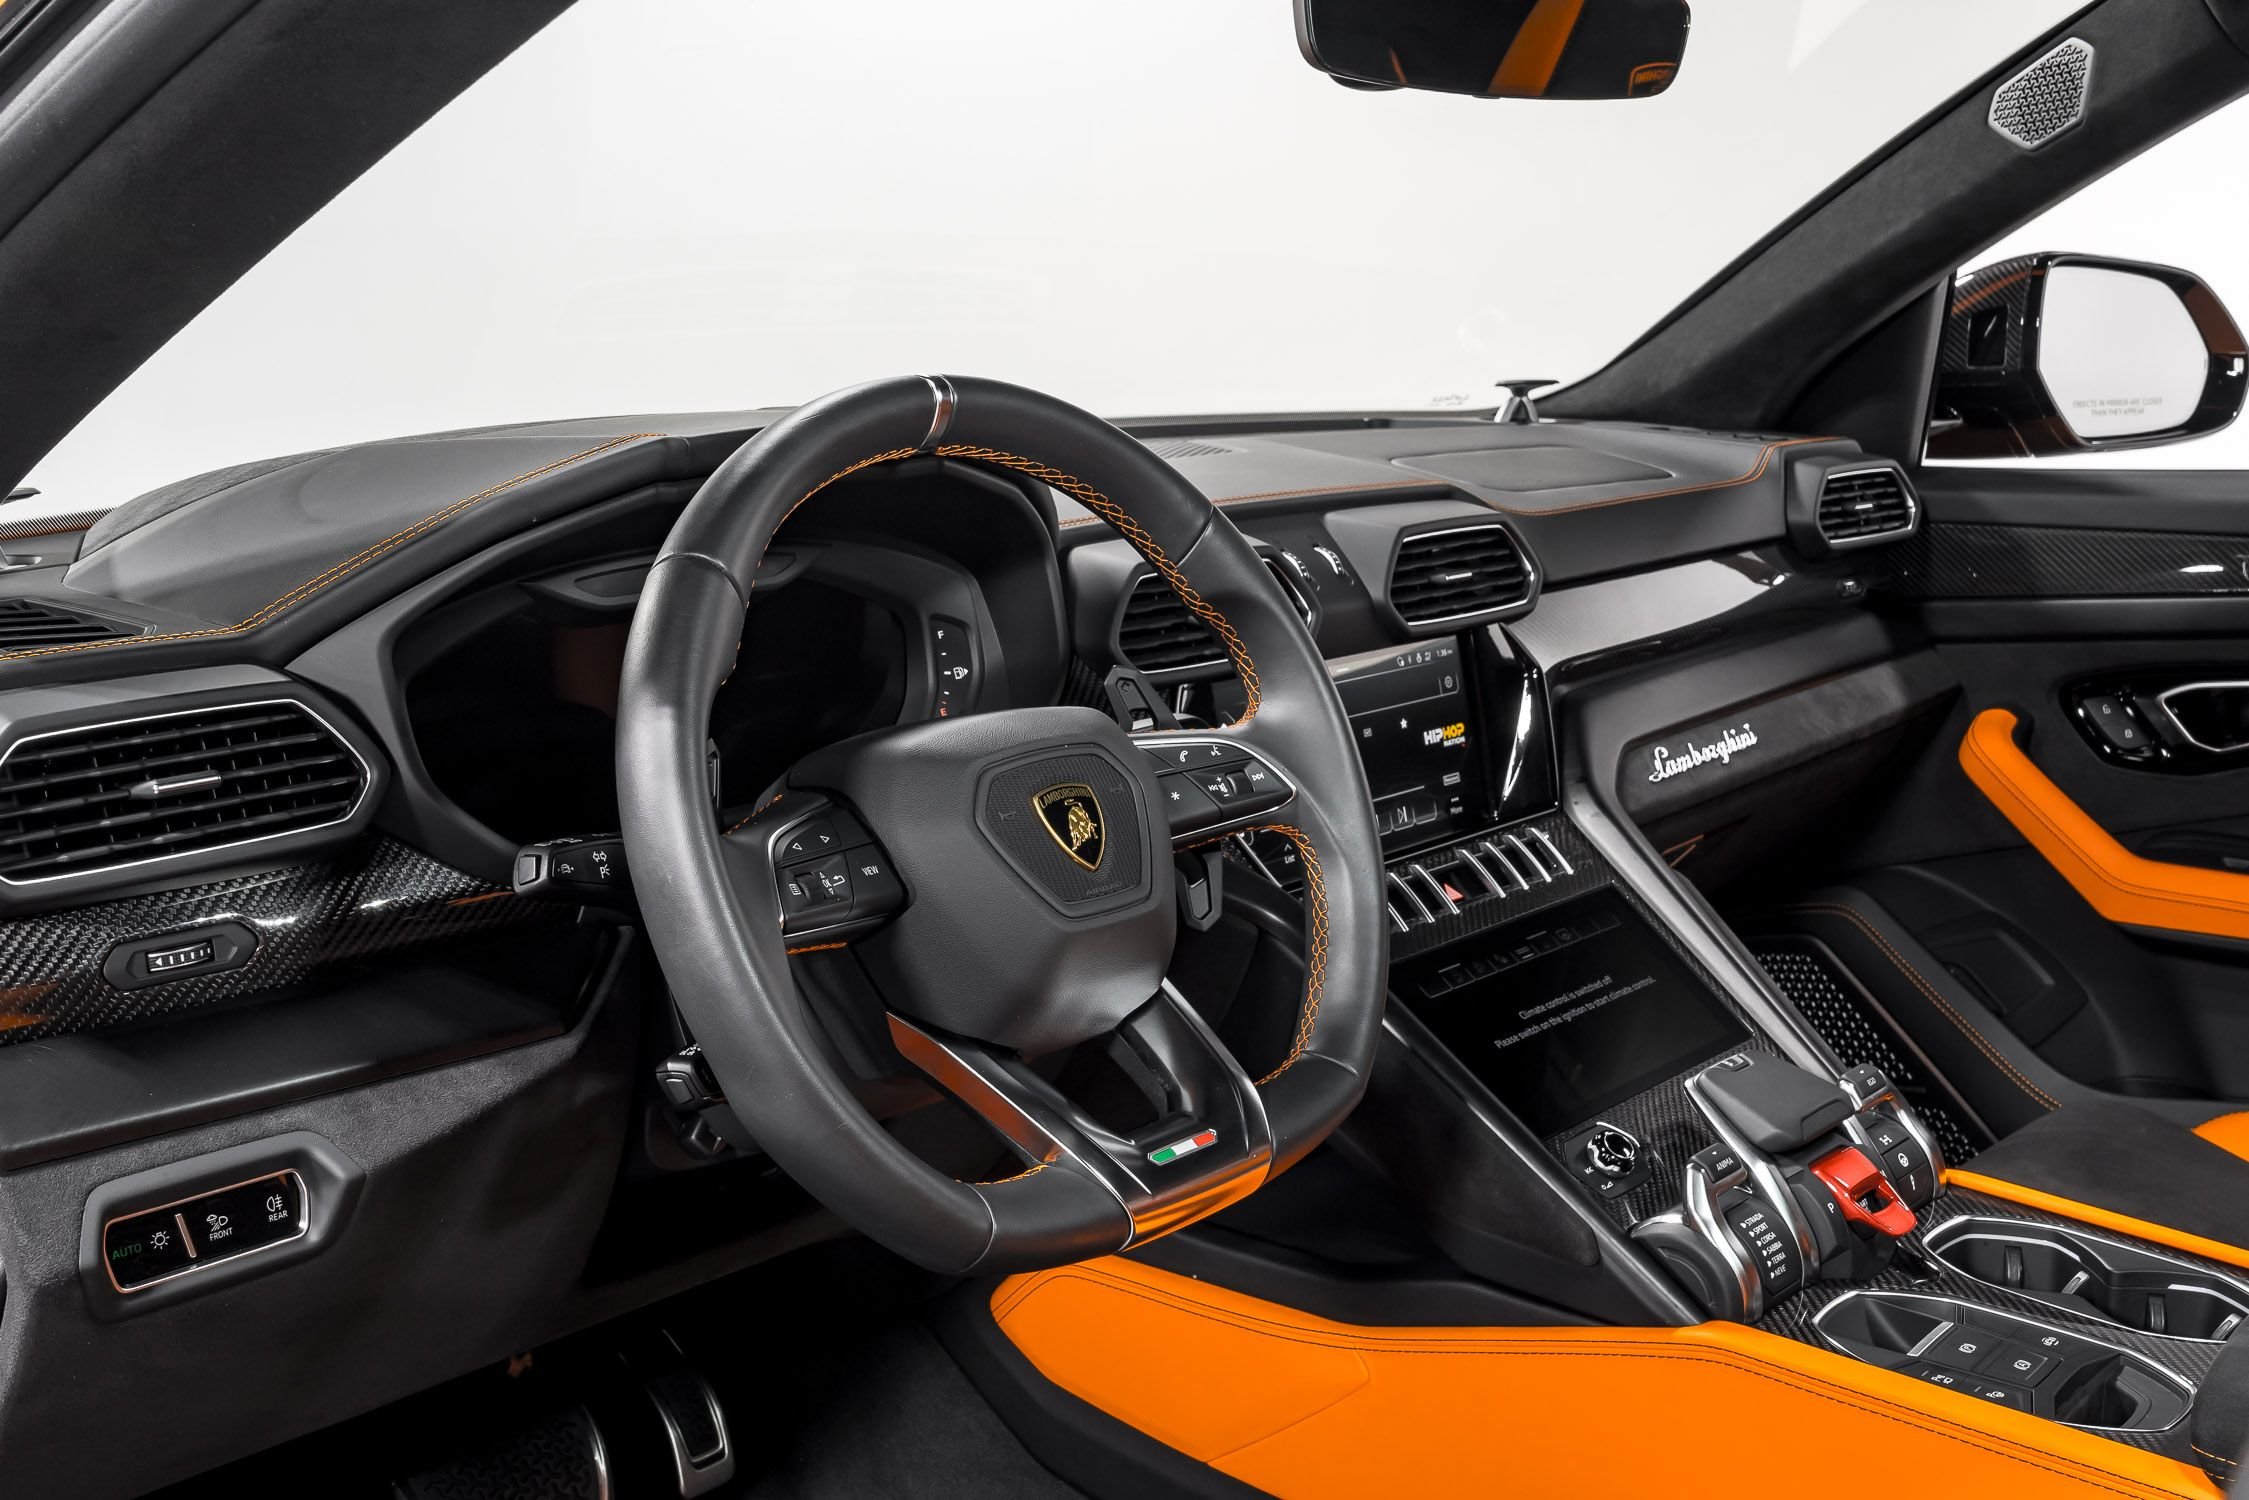 Used 2022 Lamborghini Urus For Sale at LAMBORGHINI DALLAS | VIN 